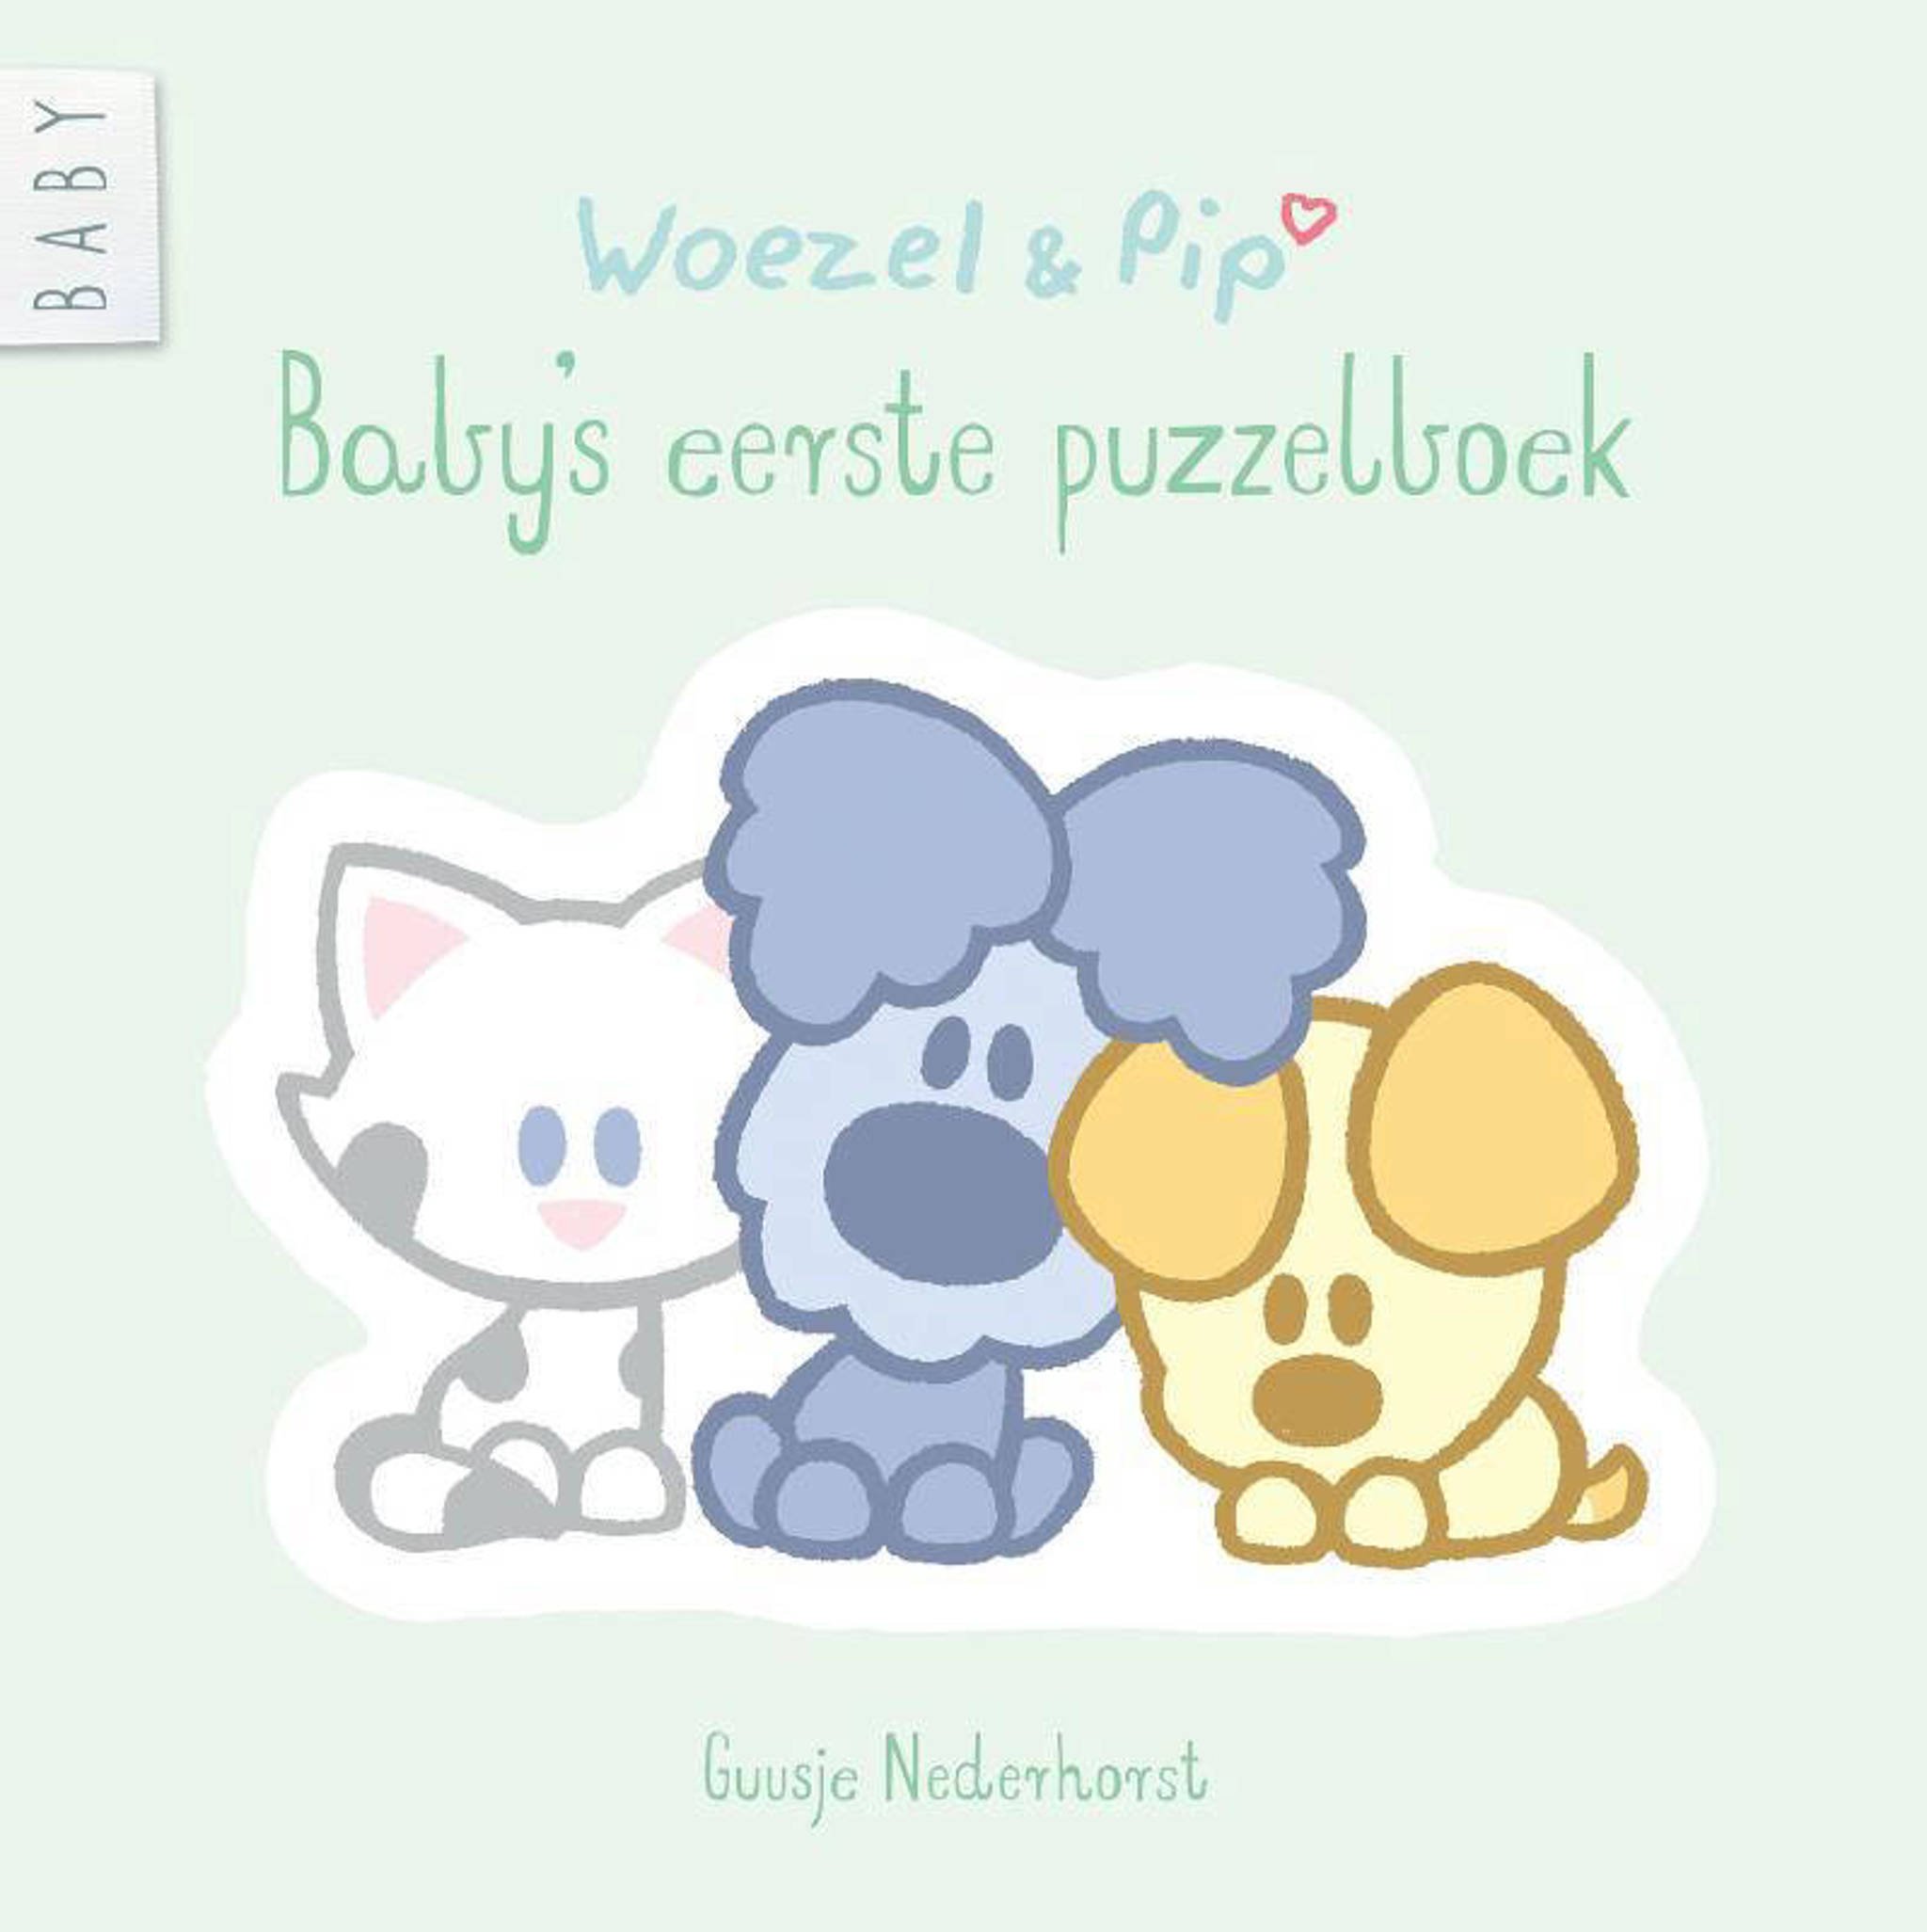 staking Plotselinge afdaling Bezwaar Guusje Nederhorst Woezel & Pip: Baby's eerste puzzelboek | wehkamp